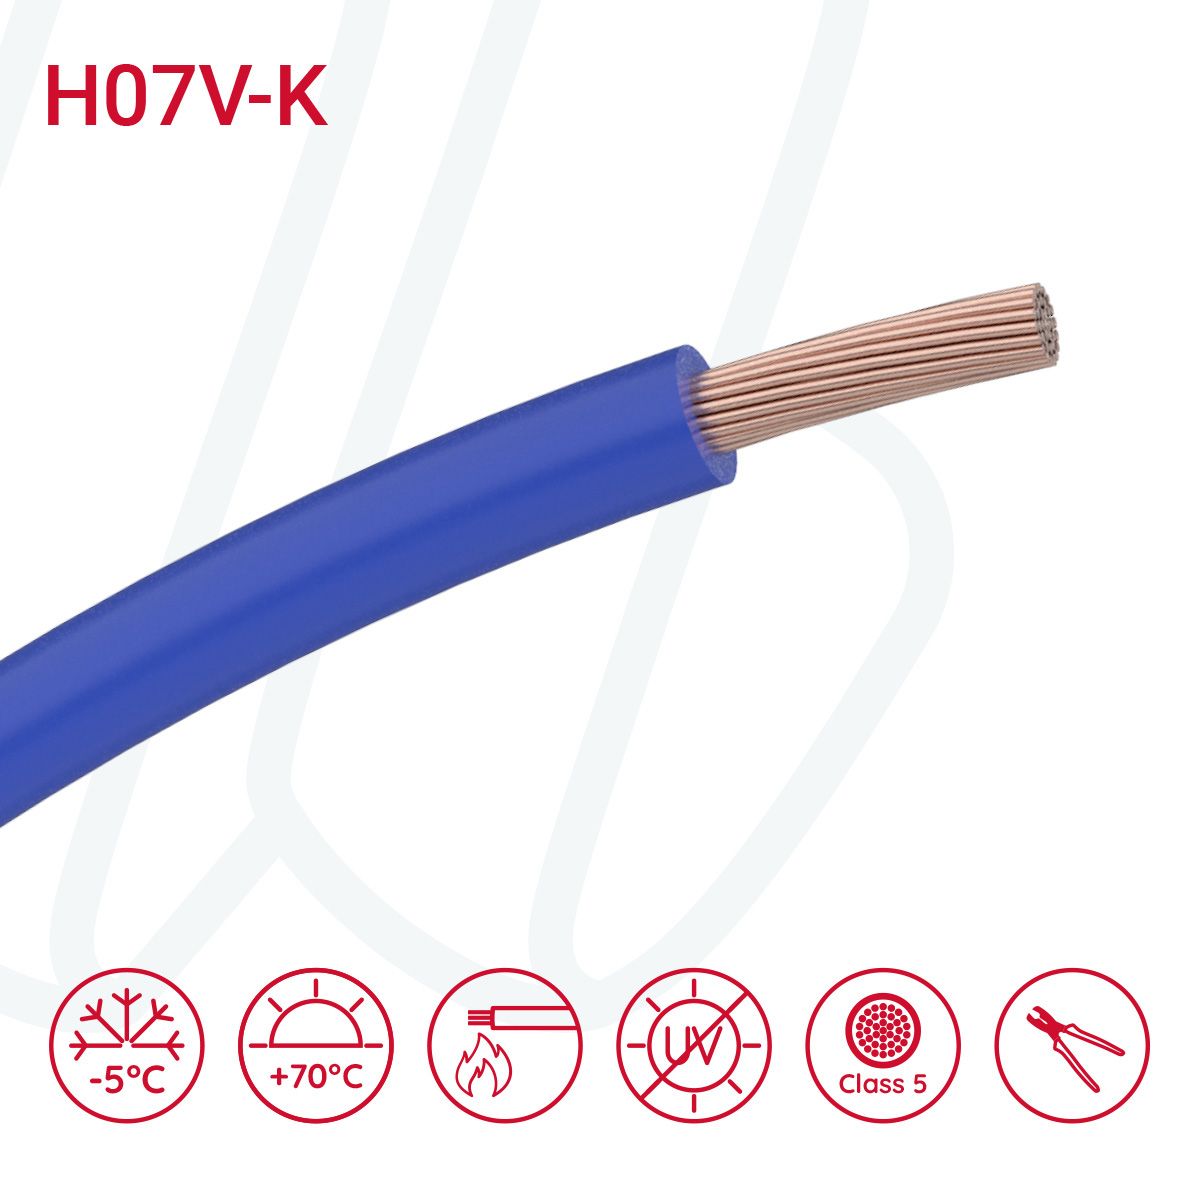 Провід монтажний гнучкий H07V-K 10 мм² темно-синій, 01, 10